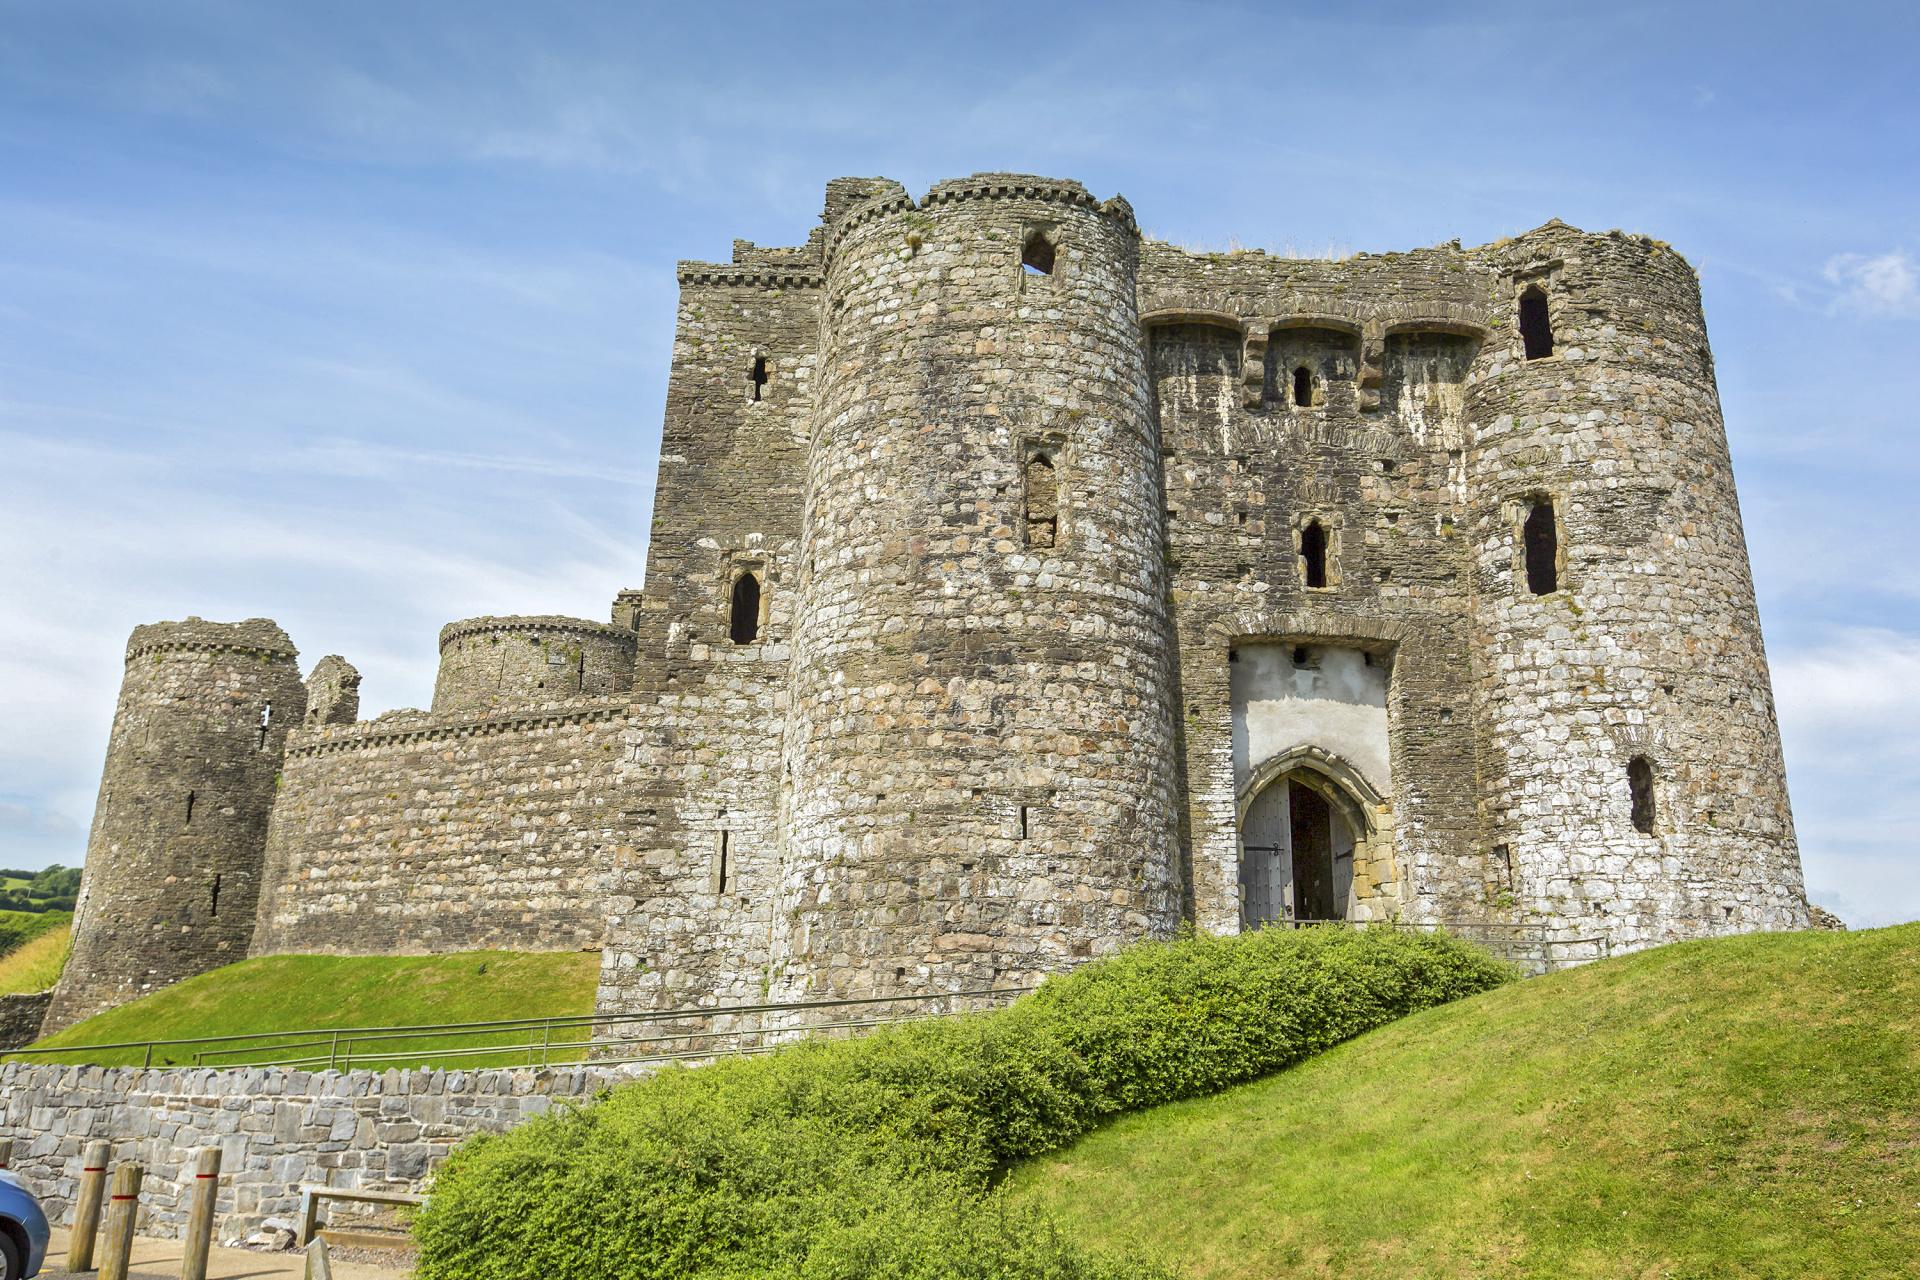 Castell Cydweli/Kidwelly Castle